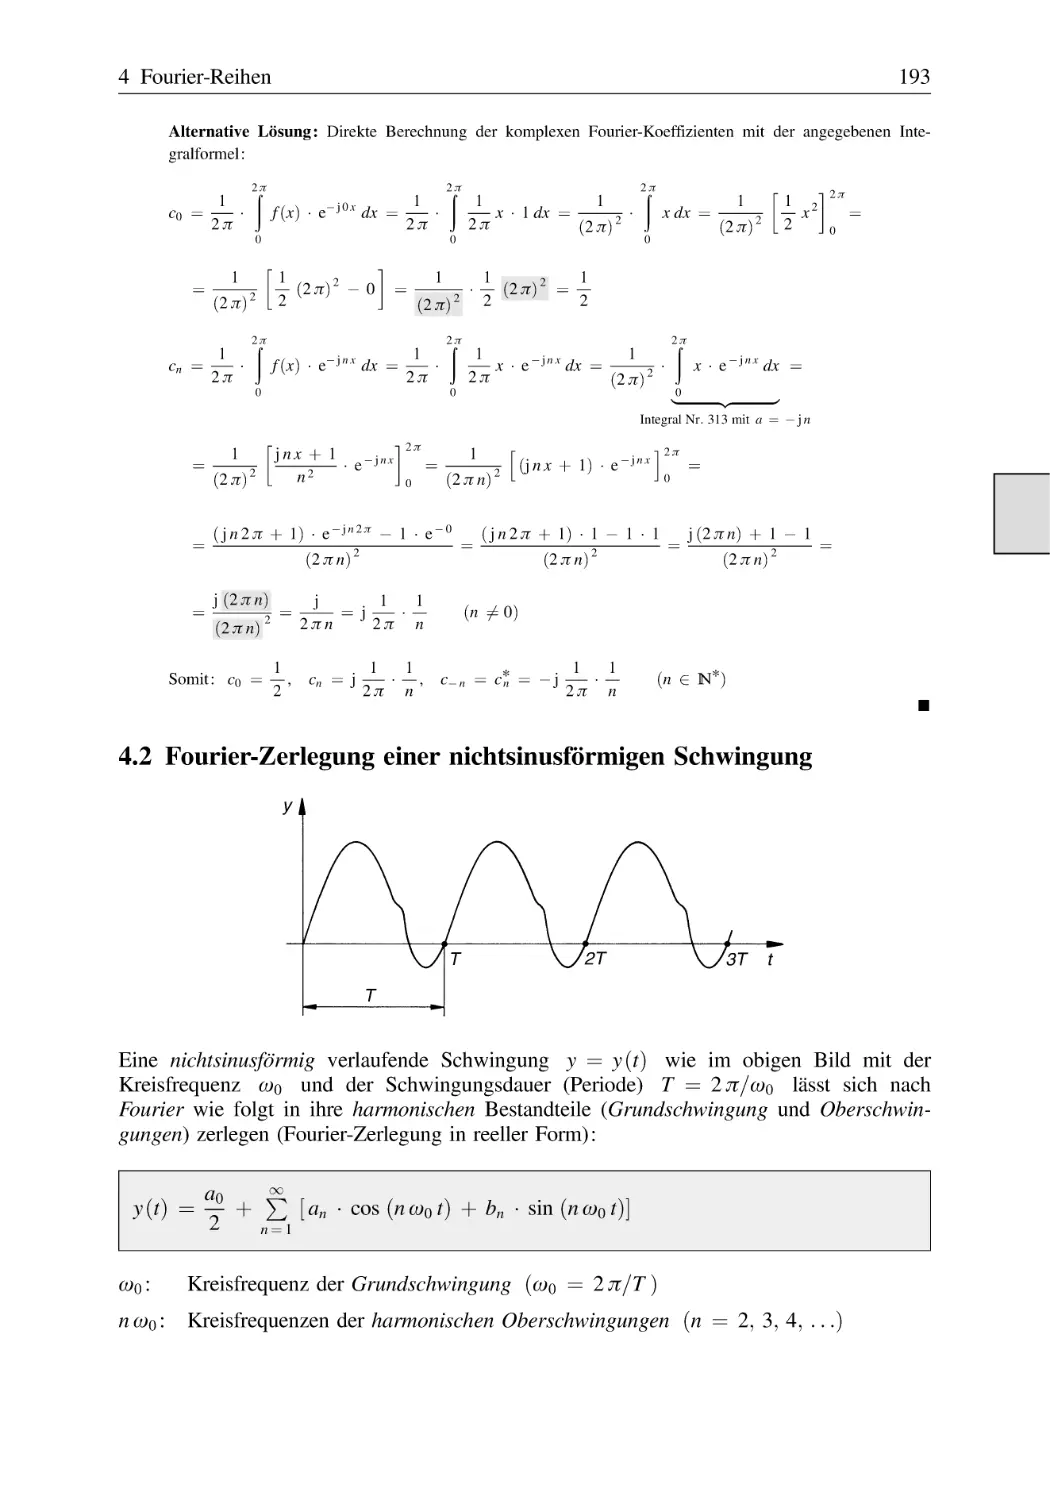 4.2 Fourier-Zerlegung einer nichtsinusförmigen Schwingung